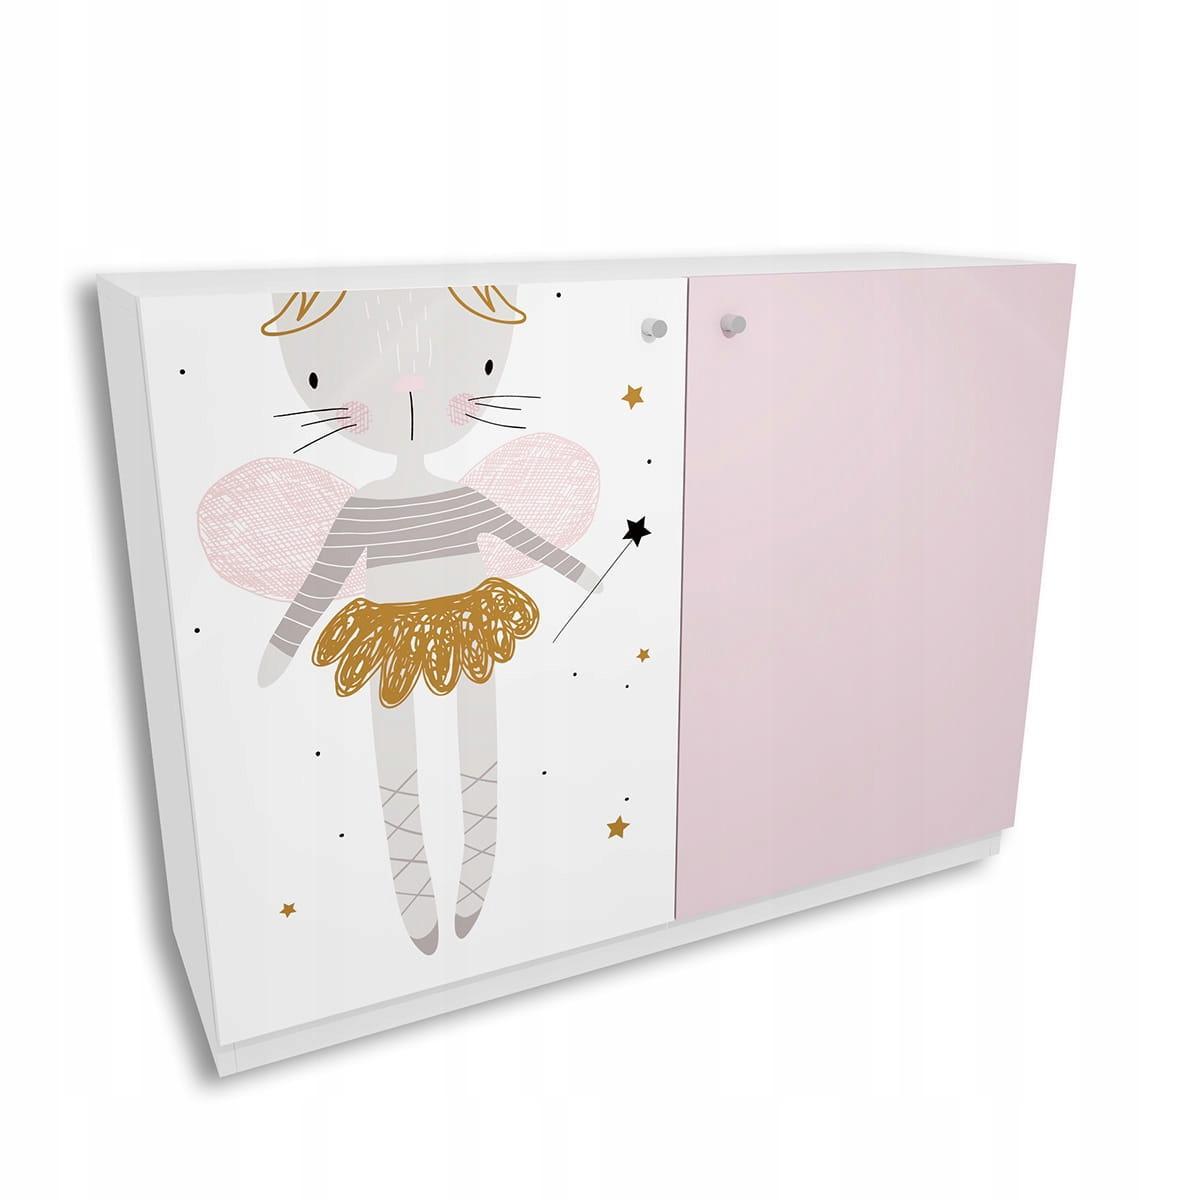 Komoda FAIRY 120x90 cm biało różowa księżniczka dla dziecka nr. 1